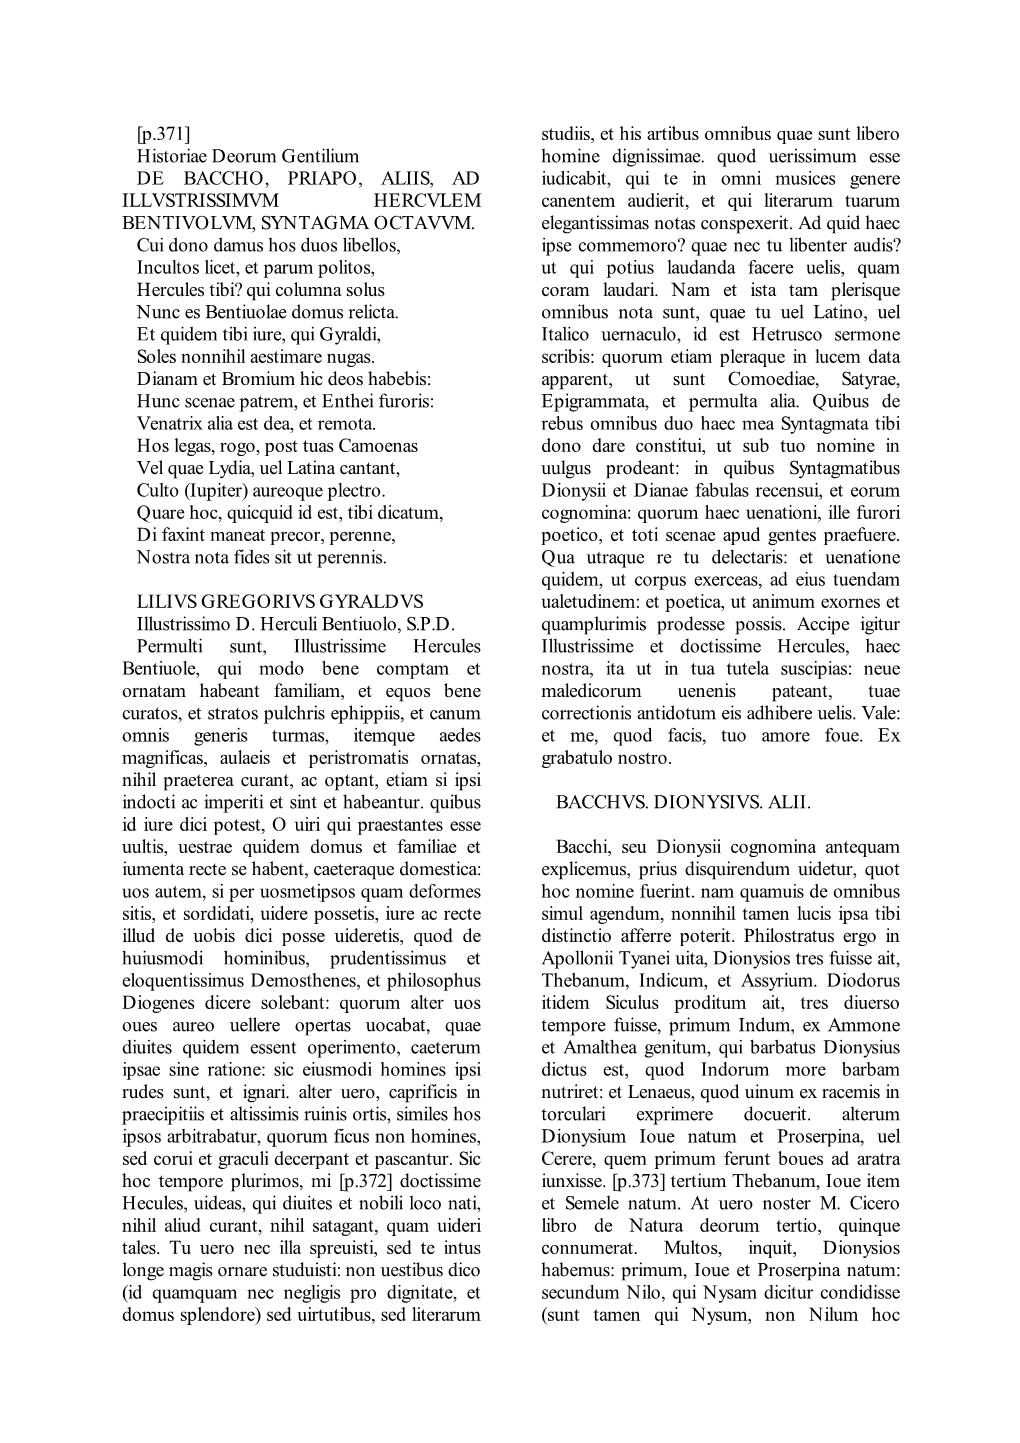 [P.371] Historiae Deorum Gentilium DE BACCHO, PRIAPO, ALIIS, AD